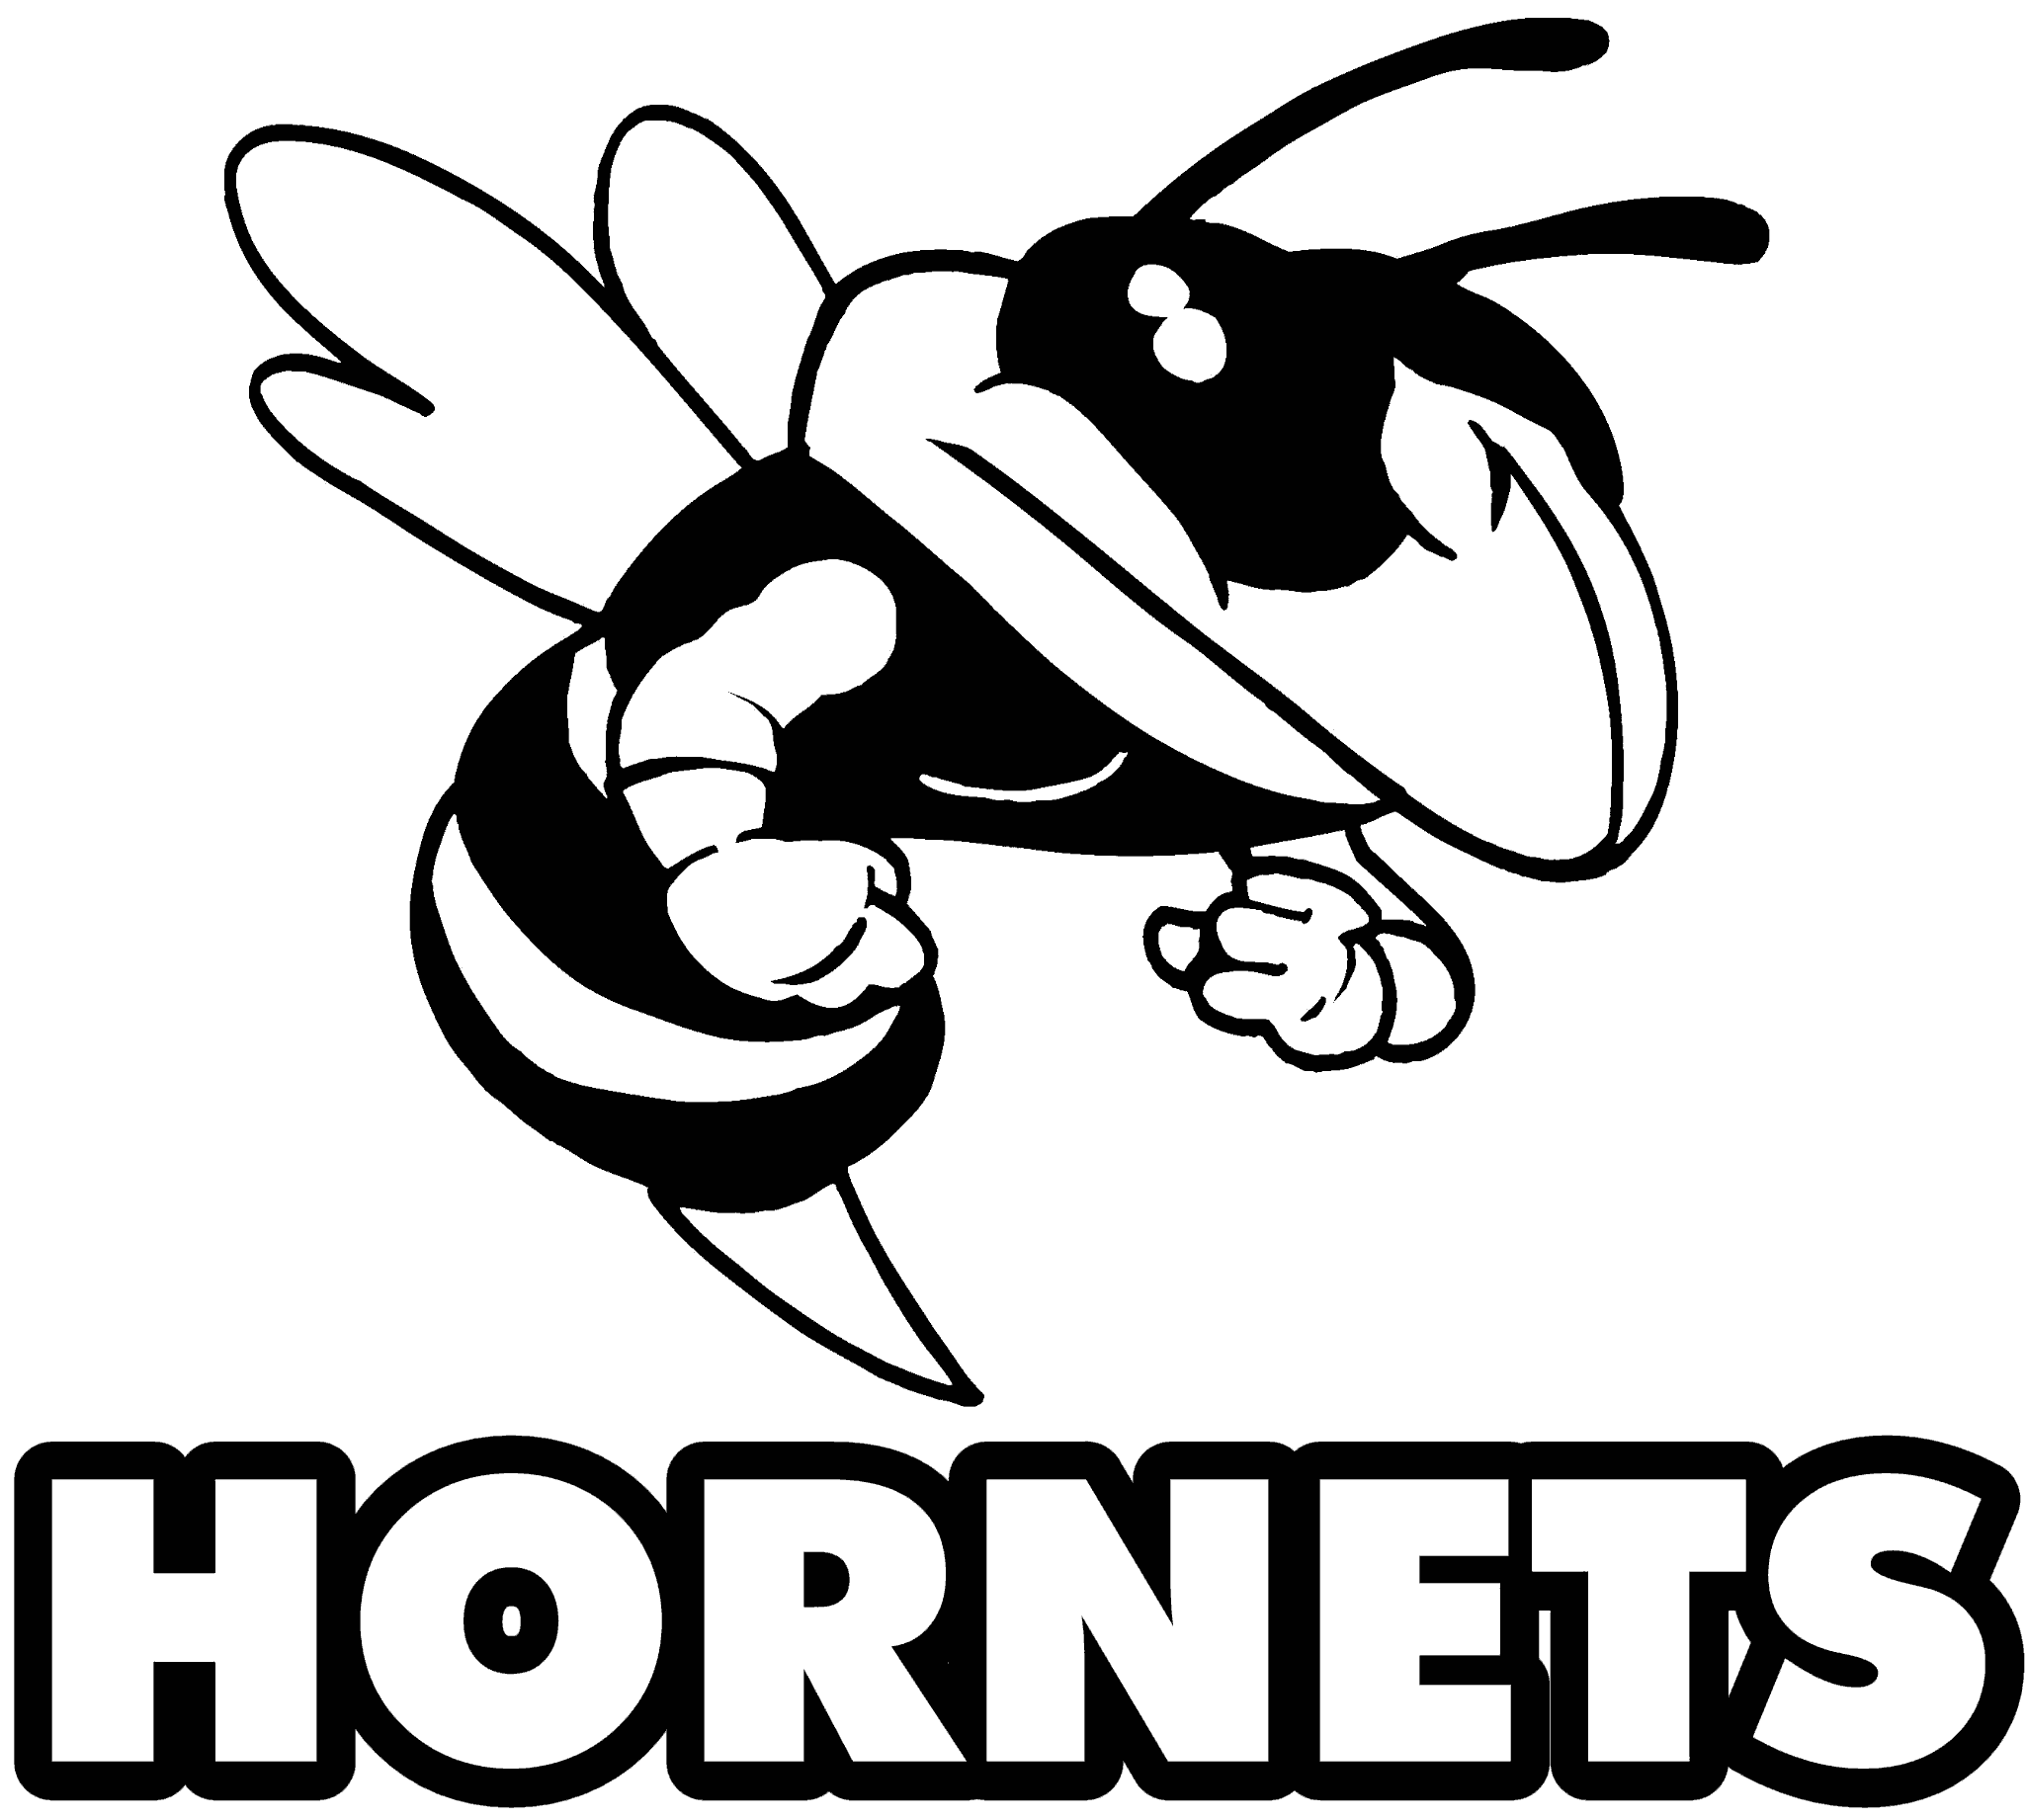 Black and White Hornets Logo - Free Hornet Clipart, Download Free Clip Art, Free Clip Art on ...